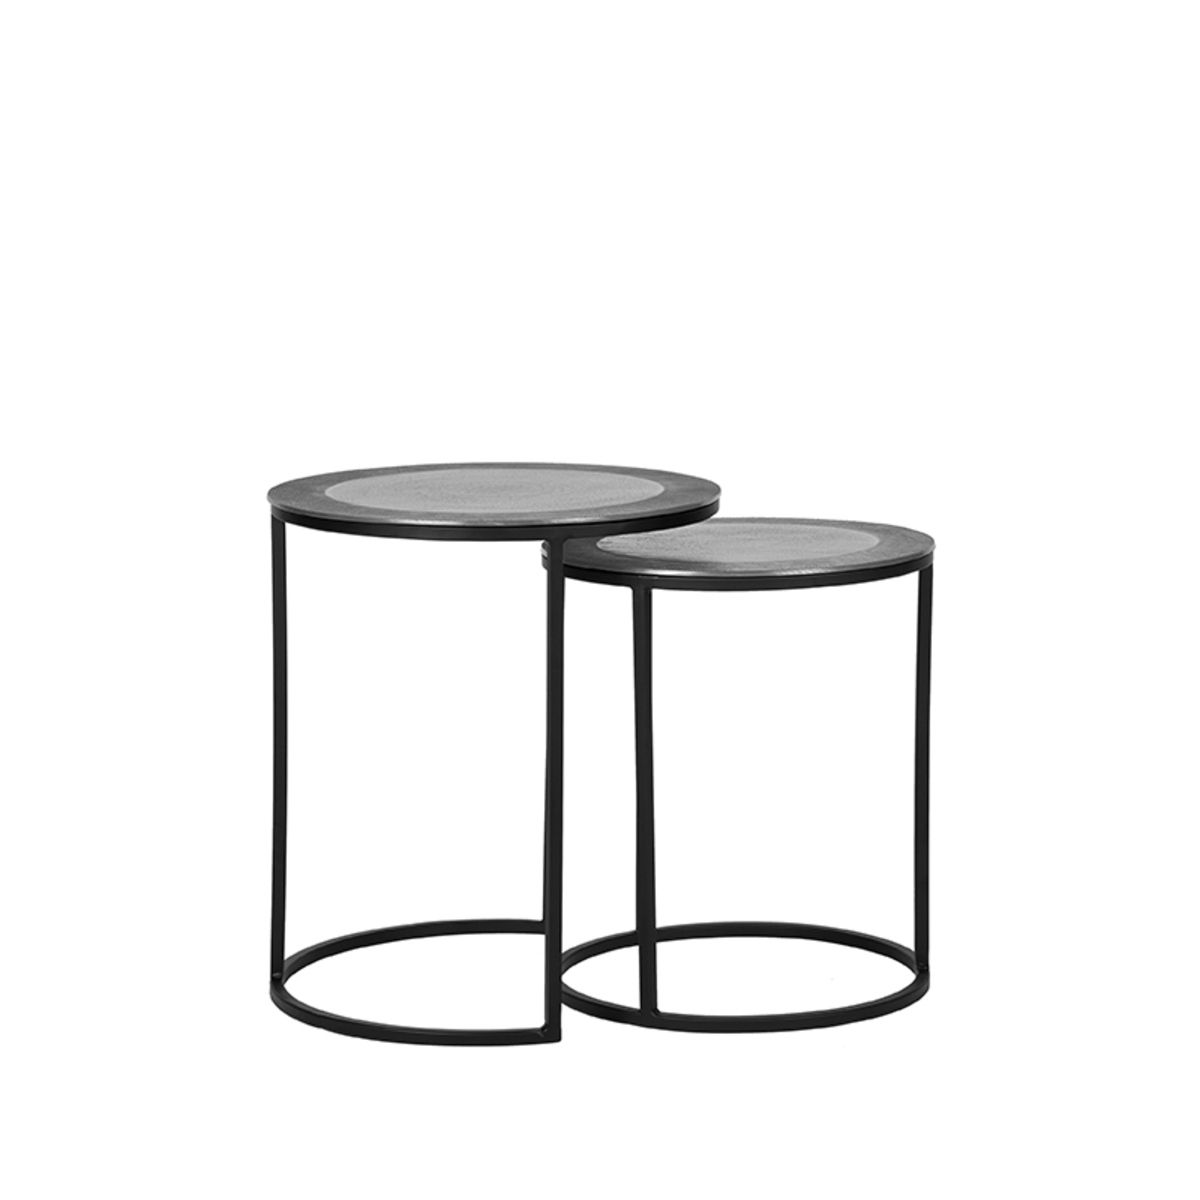 Set 2 šedých kovových konferenčních stolků LABEL51 Revo, 40 cm - MUJ HOUSE.cz